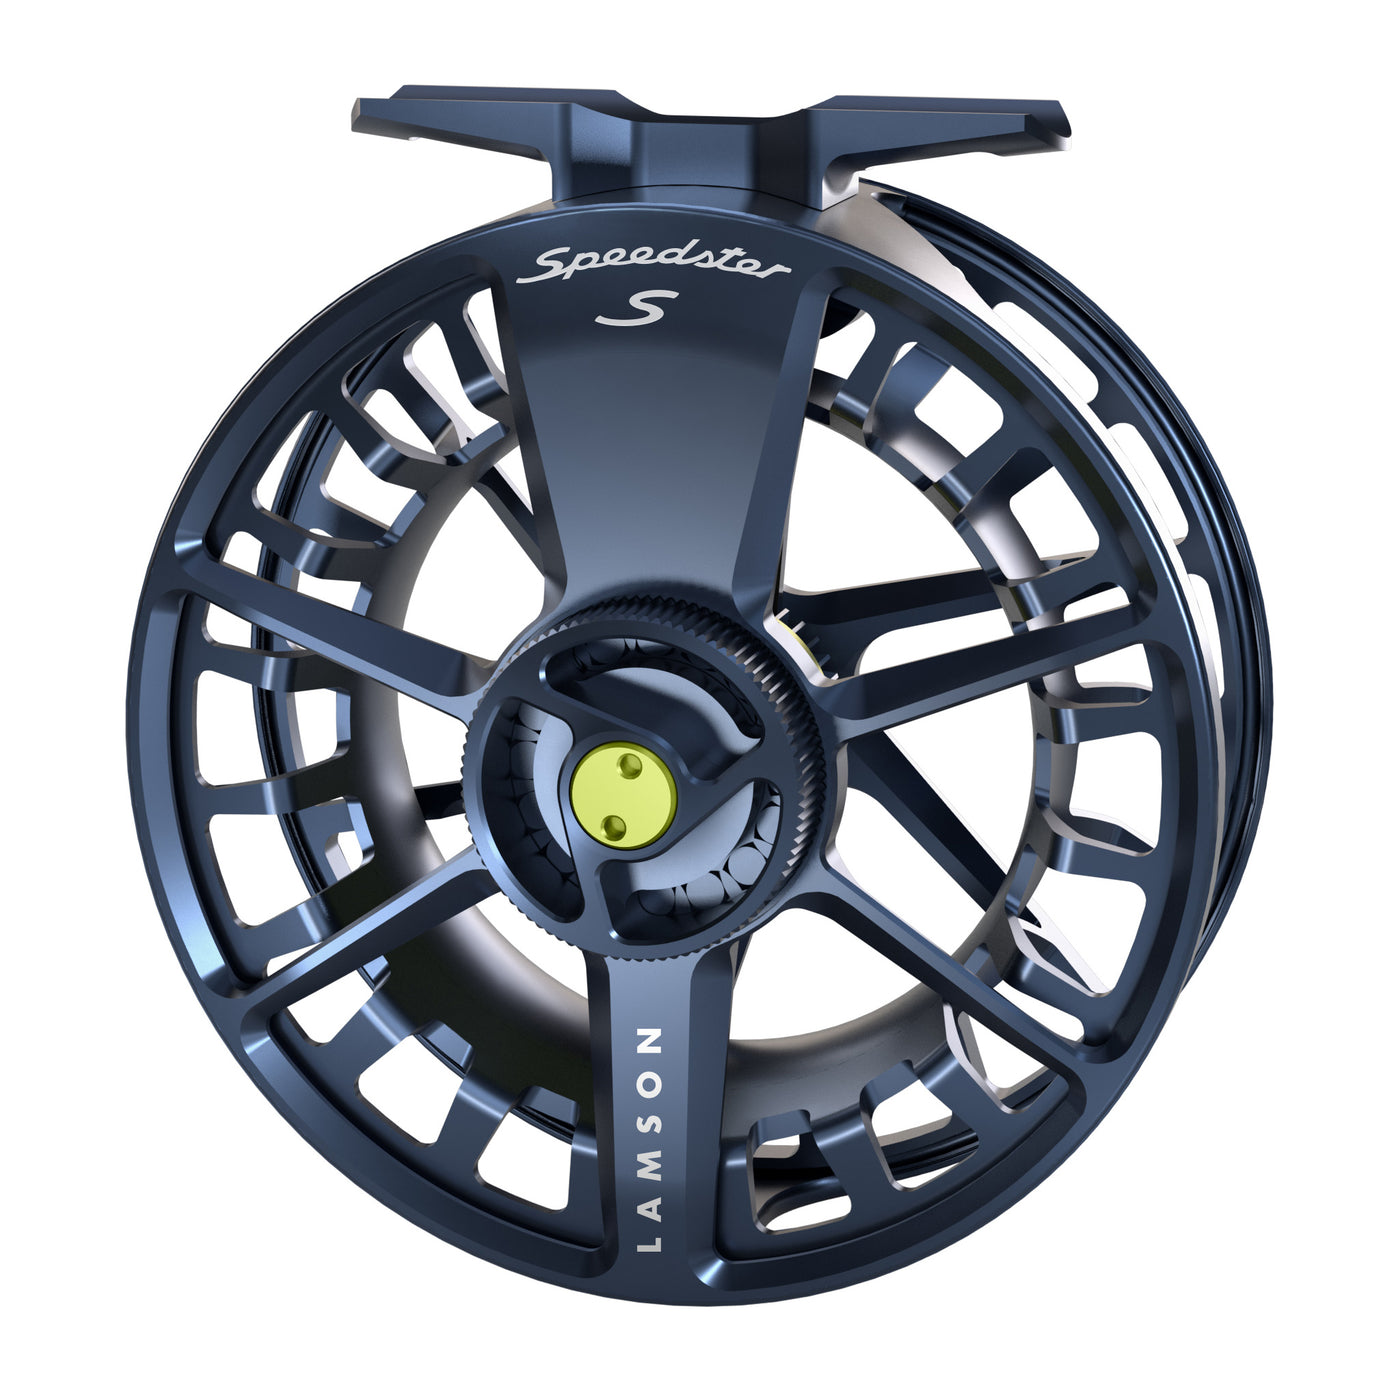  Waterworks-Lamson Speedster S Fly Fishing Reel